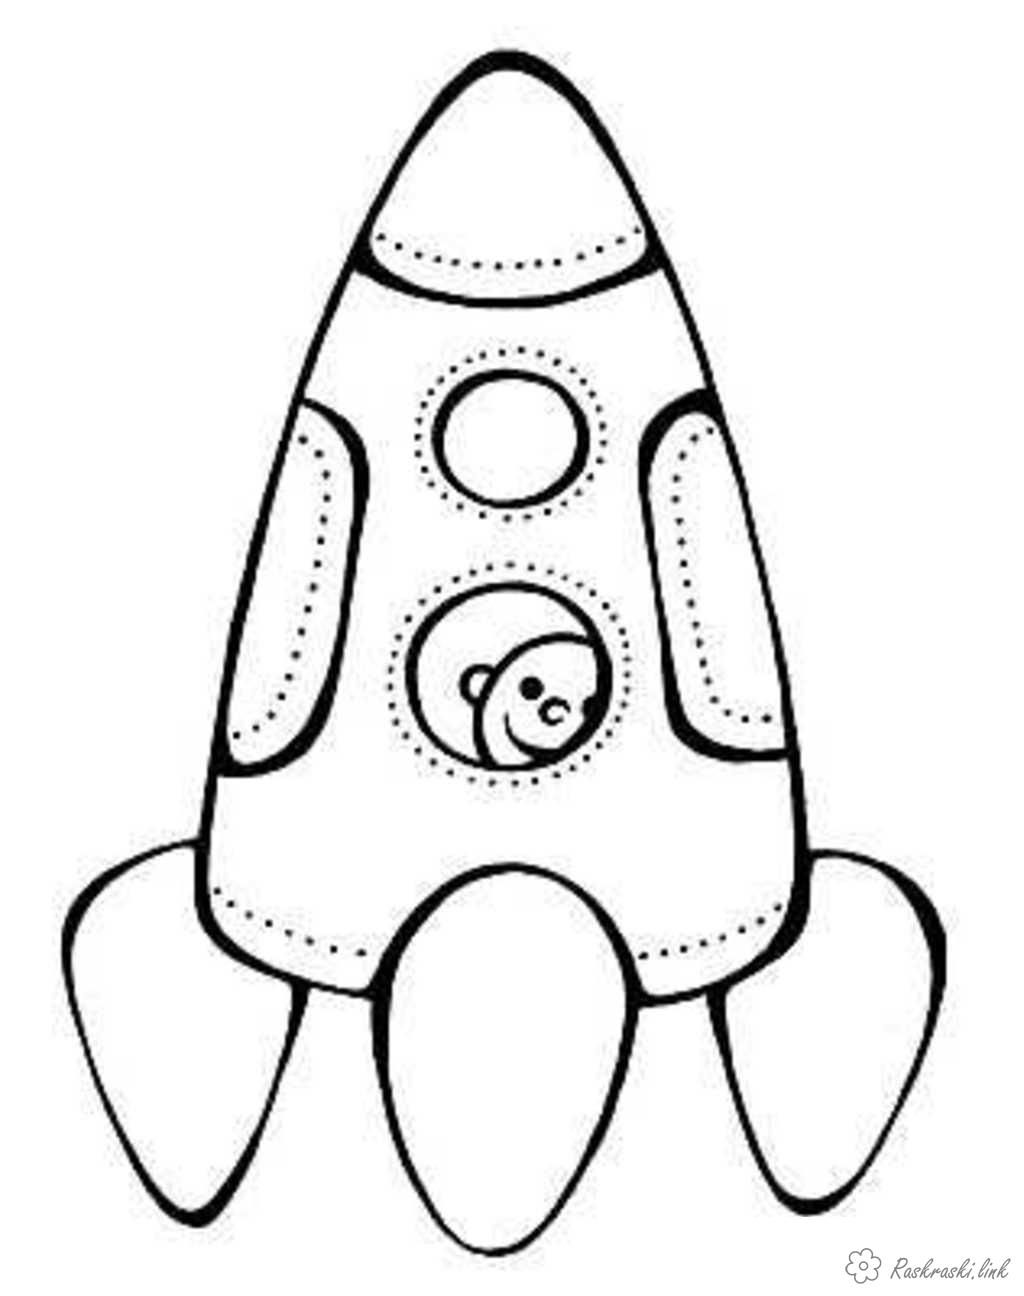 Розмальовки День космонавтики День космонавтики, ракета, місяць, дитина